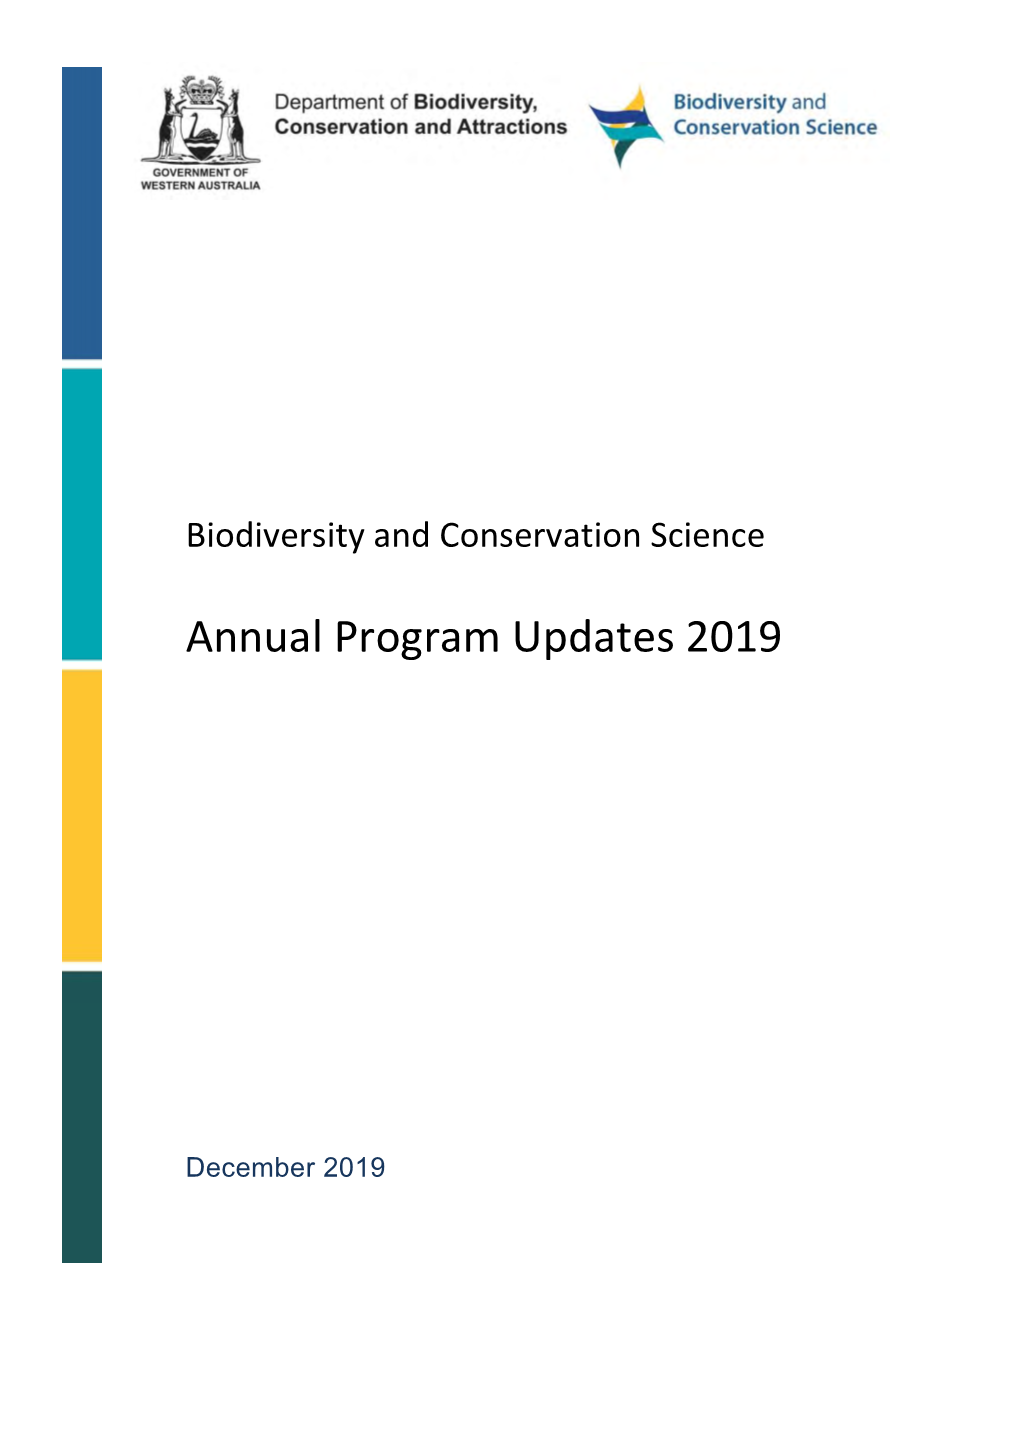 Annual Program Updates 2019